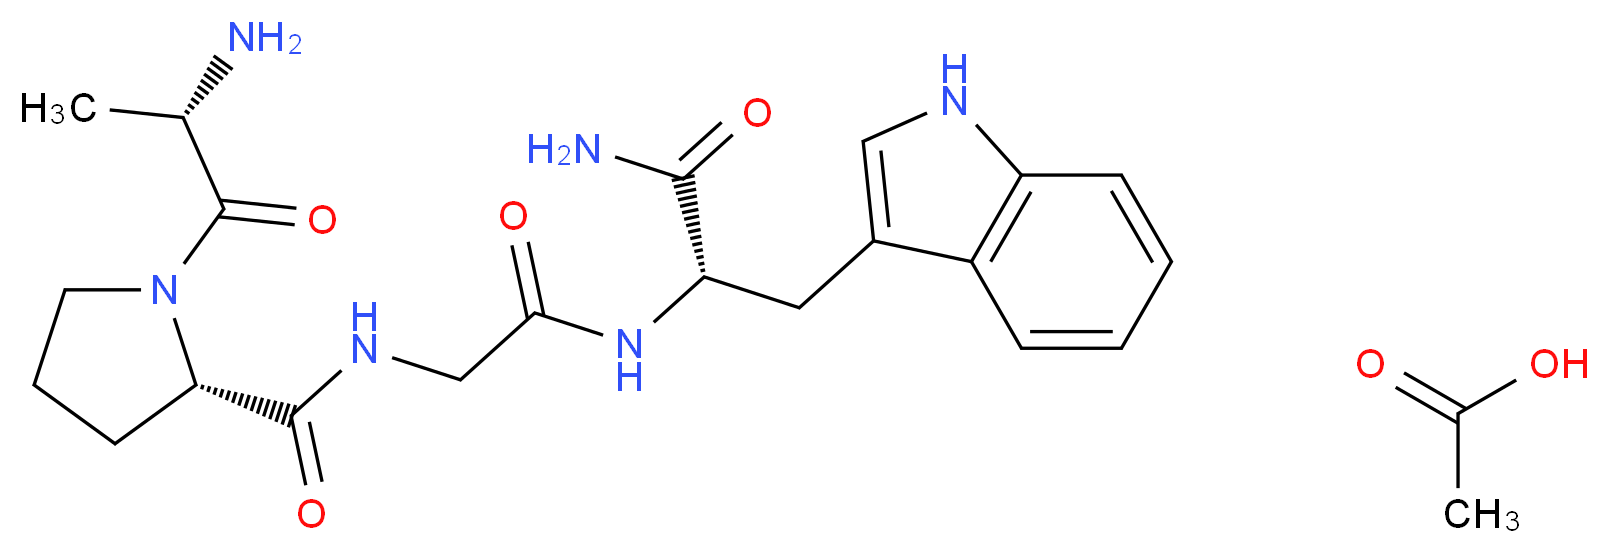 144110-40-7 molecular structure